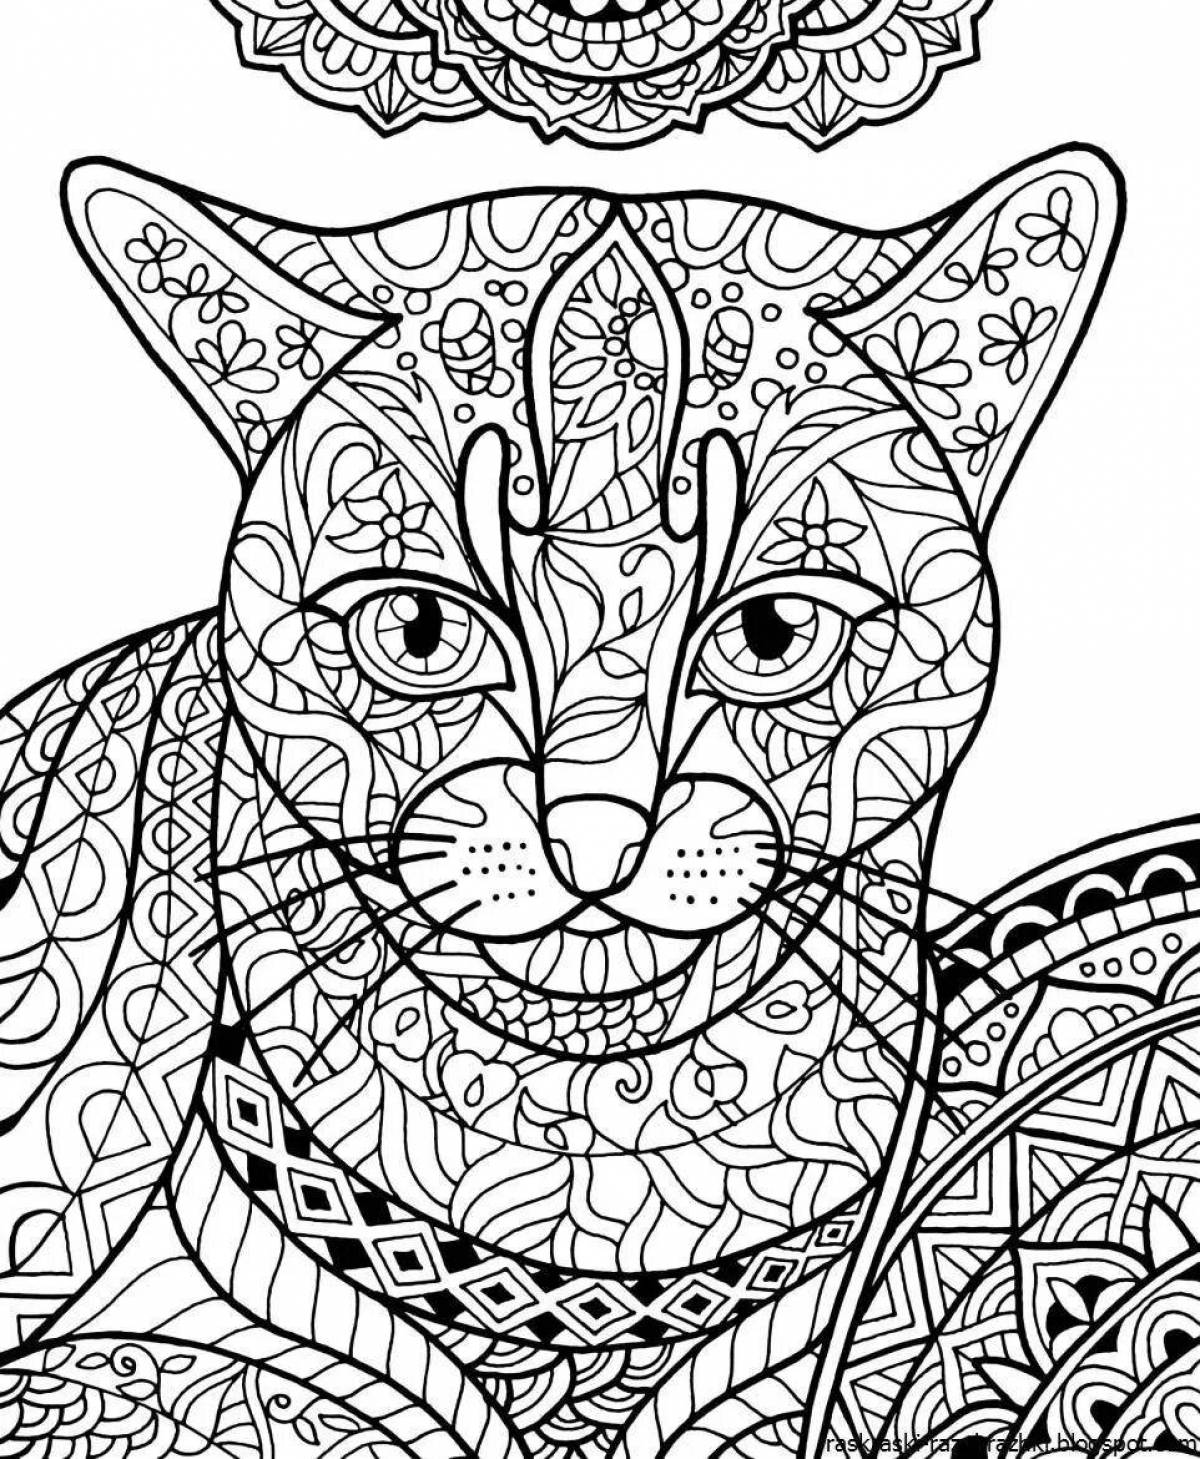 Bright cat mandala coloring book